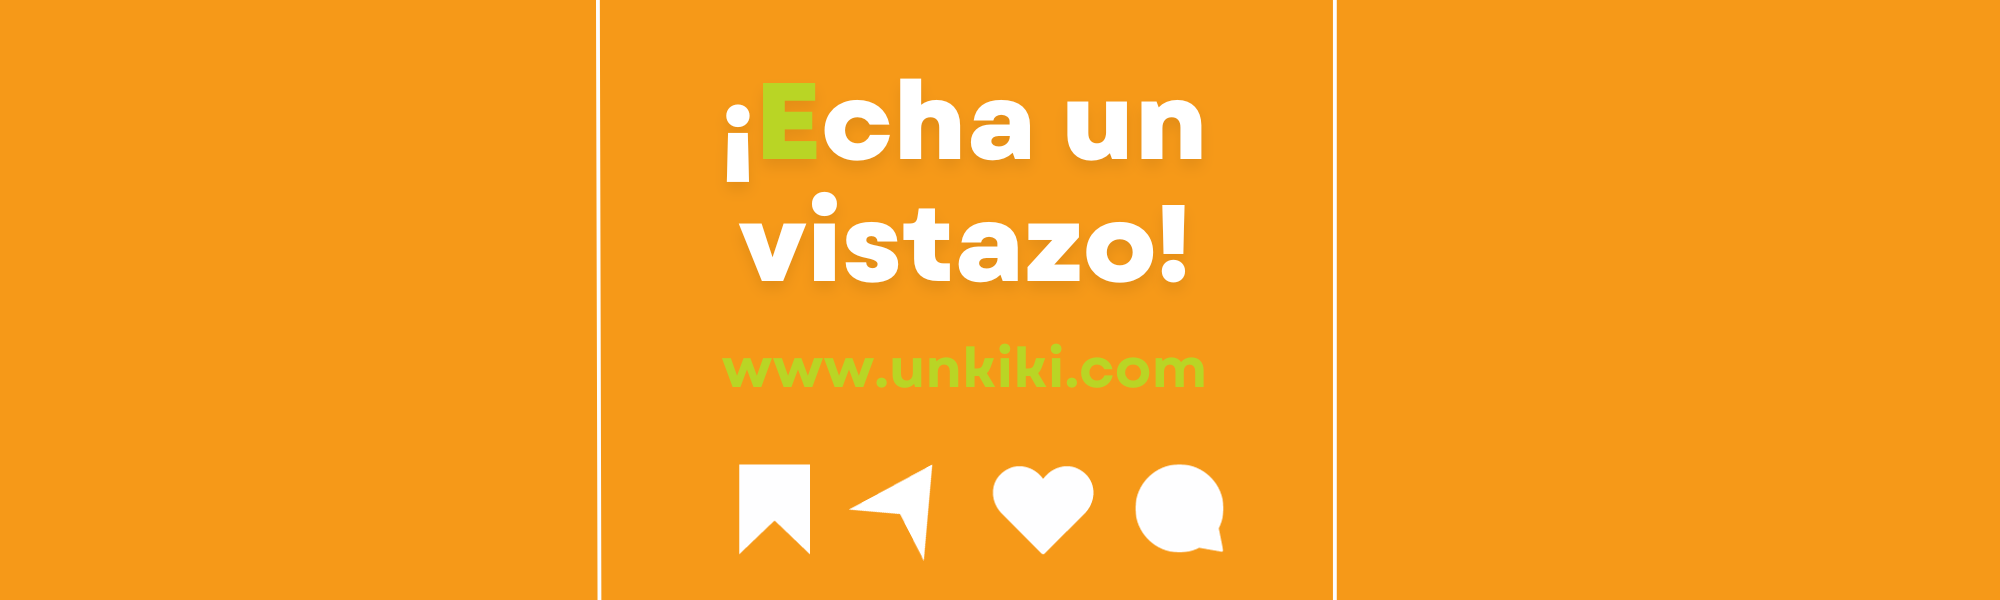 www.unkiki.com